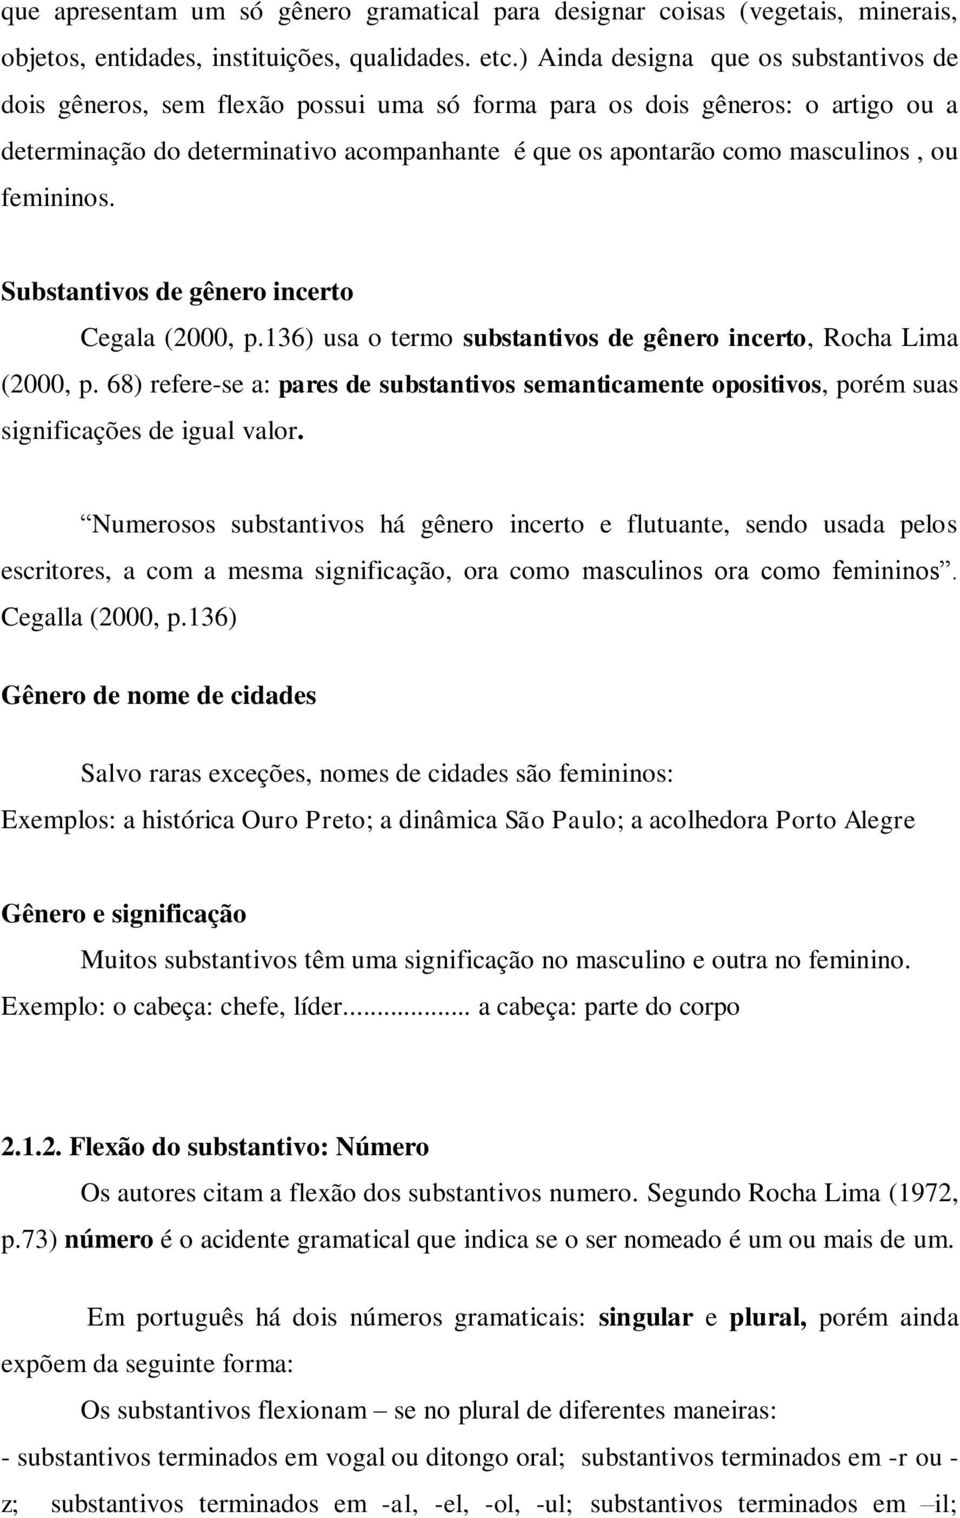 ou femininos. Substantivos de gênero incerto Cegala (2000, p.136) usa o termo substantivos de gênero incerto, Rocha Lima (2000, p.